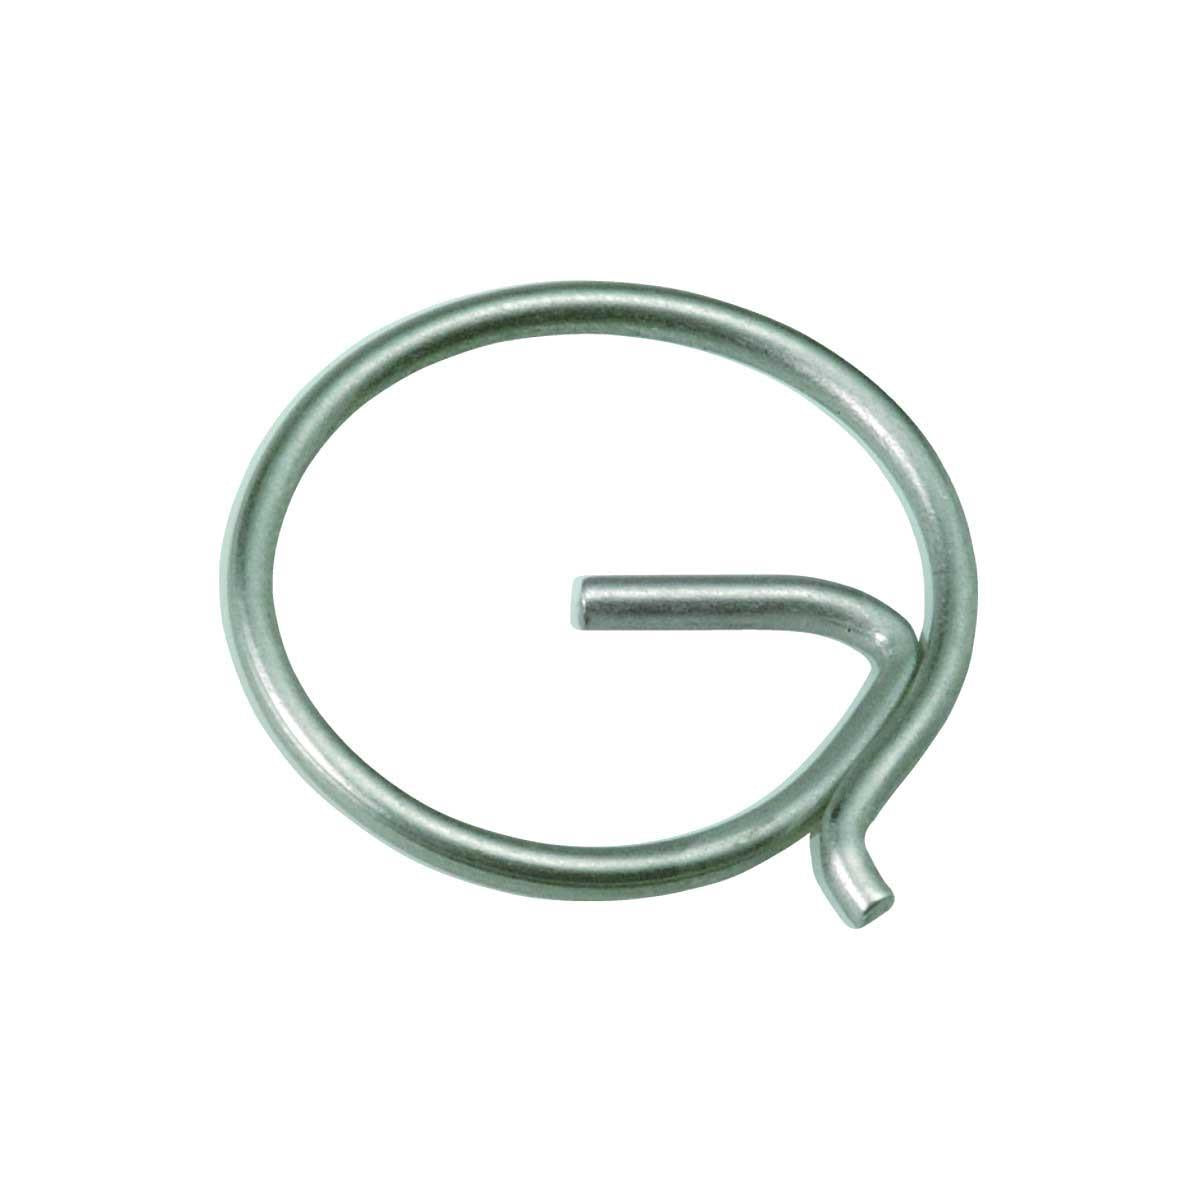 Stainless Steel G Split Ring - 1mm x 9mm